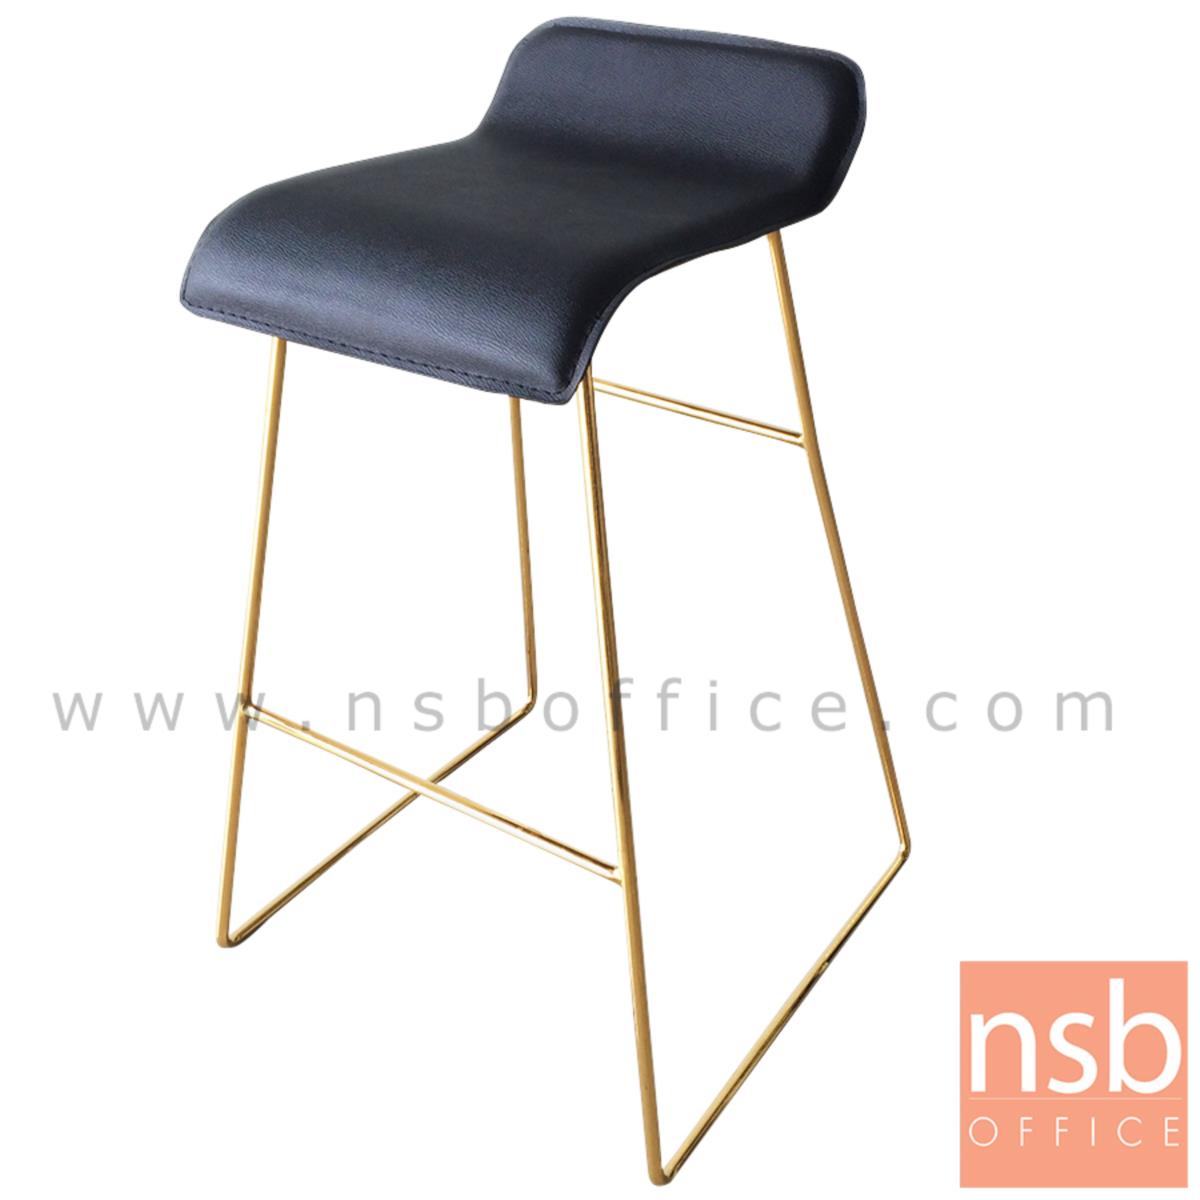 B18A079:เก้าอี้บาร์ ที่นั่งหุ้มหนังเทียม รุ่น Marigold (แมริโกลด์)  โครงขาเหล็กชุบทอง